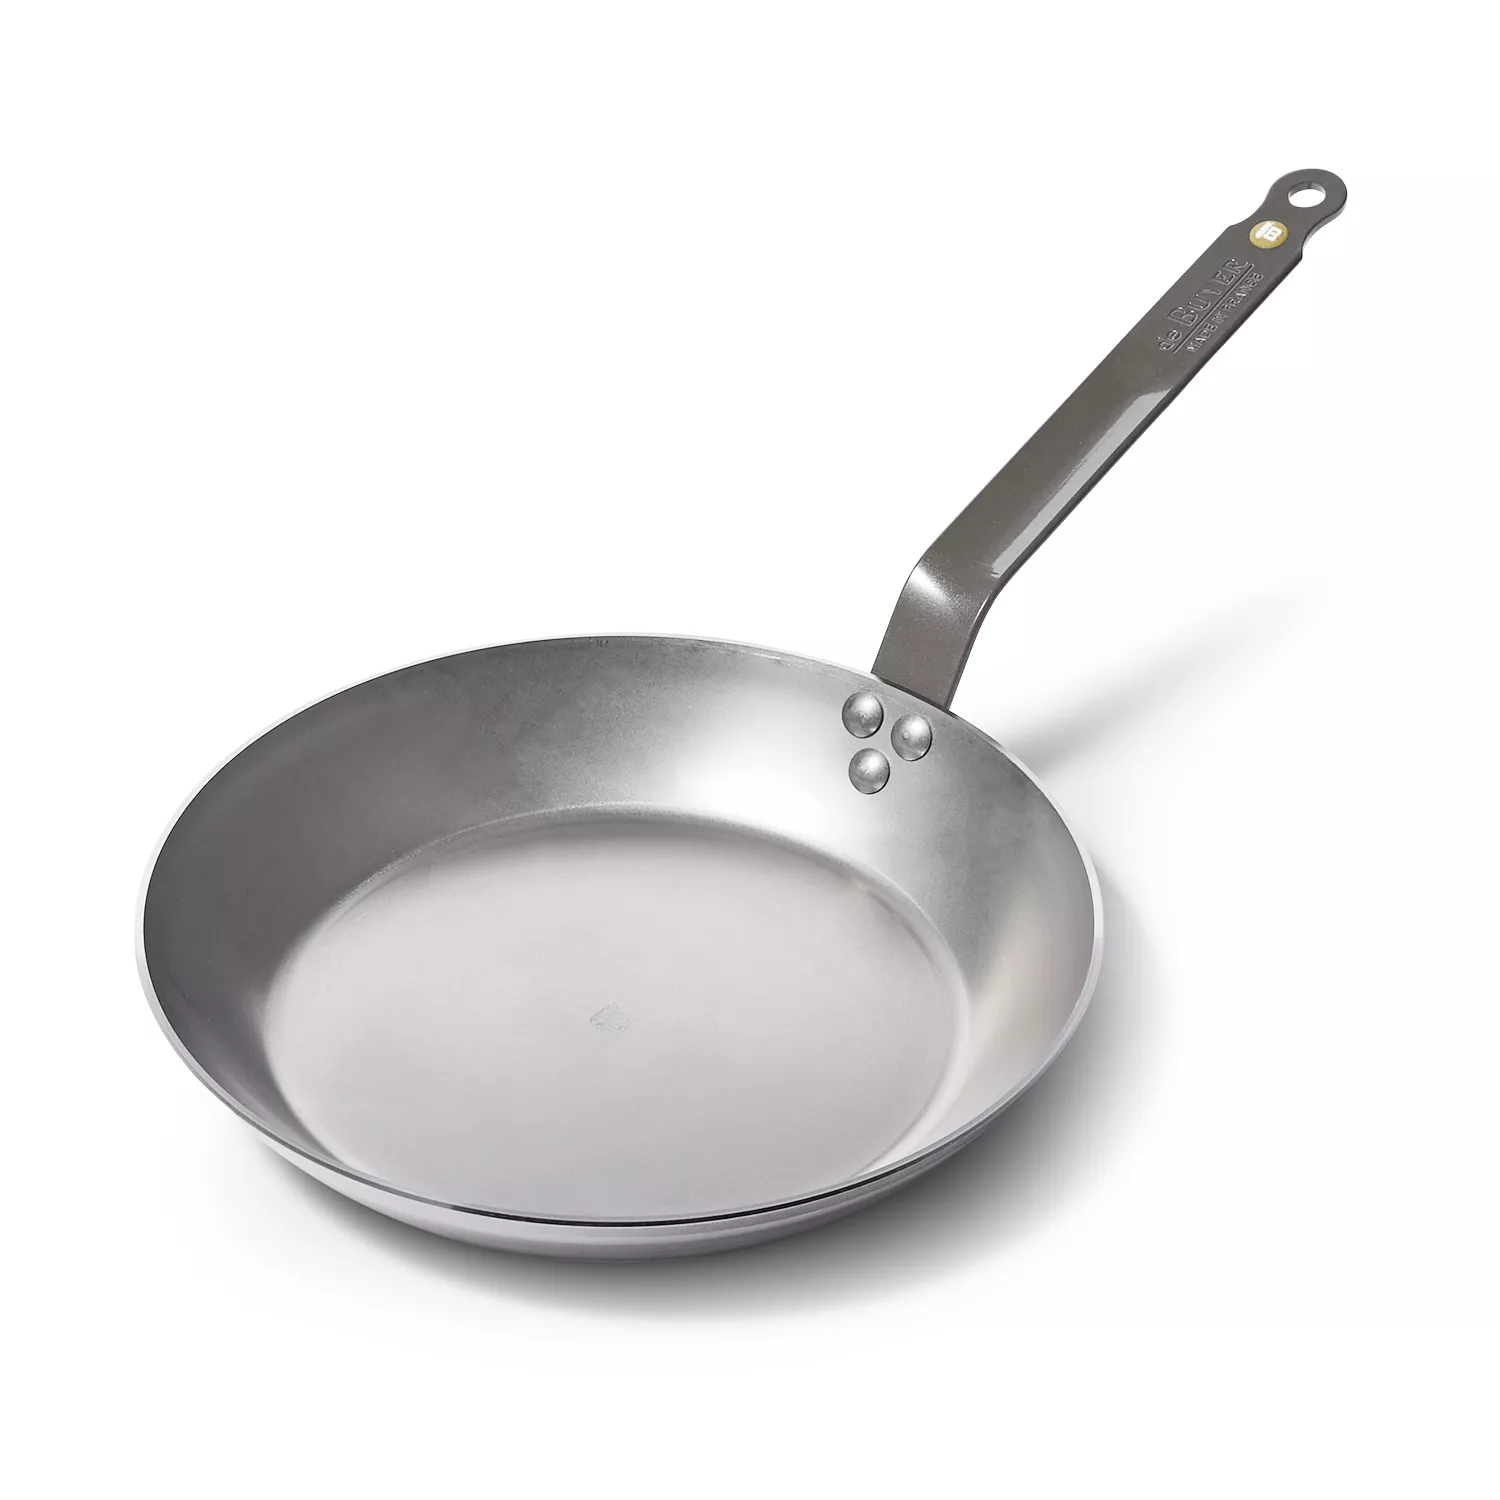 Frying pan in carbon steel, Mineral B - de Buyer - Shop online